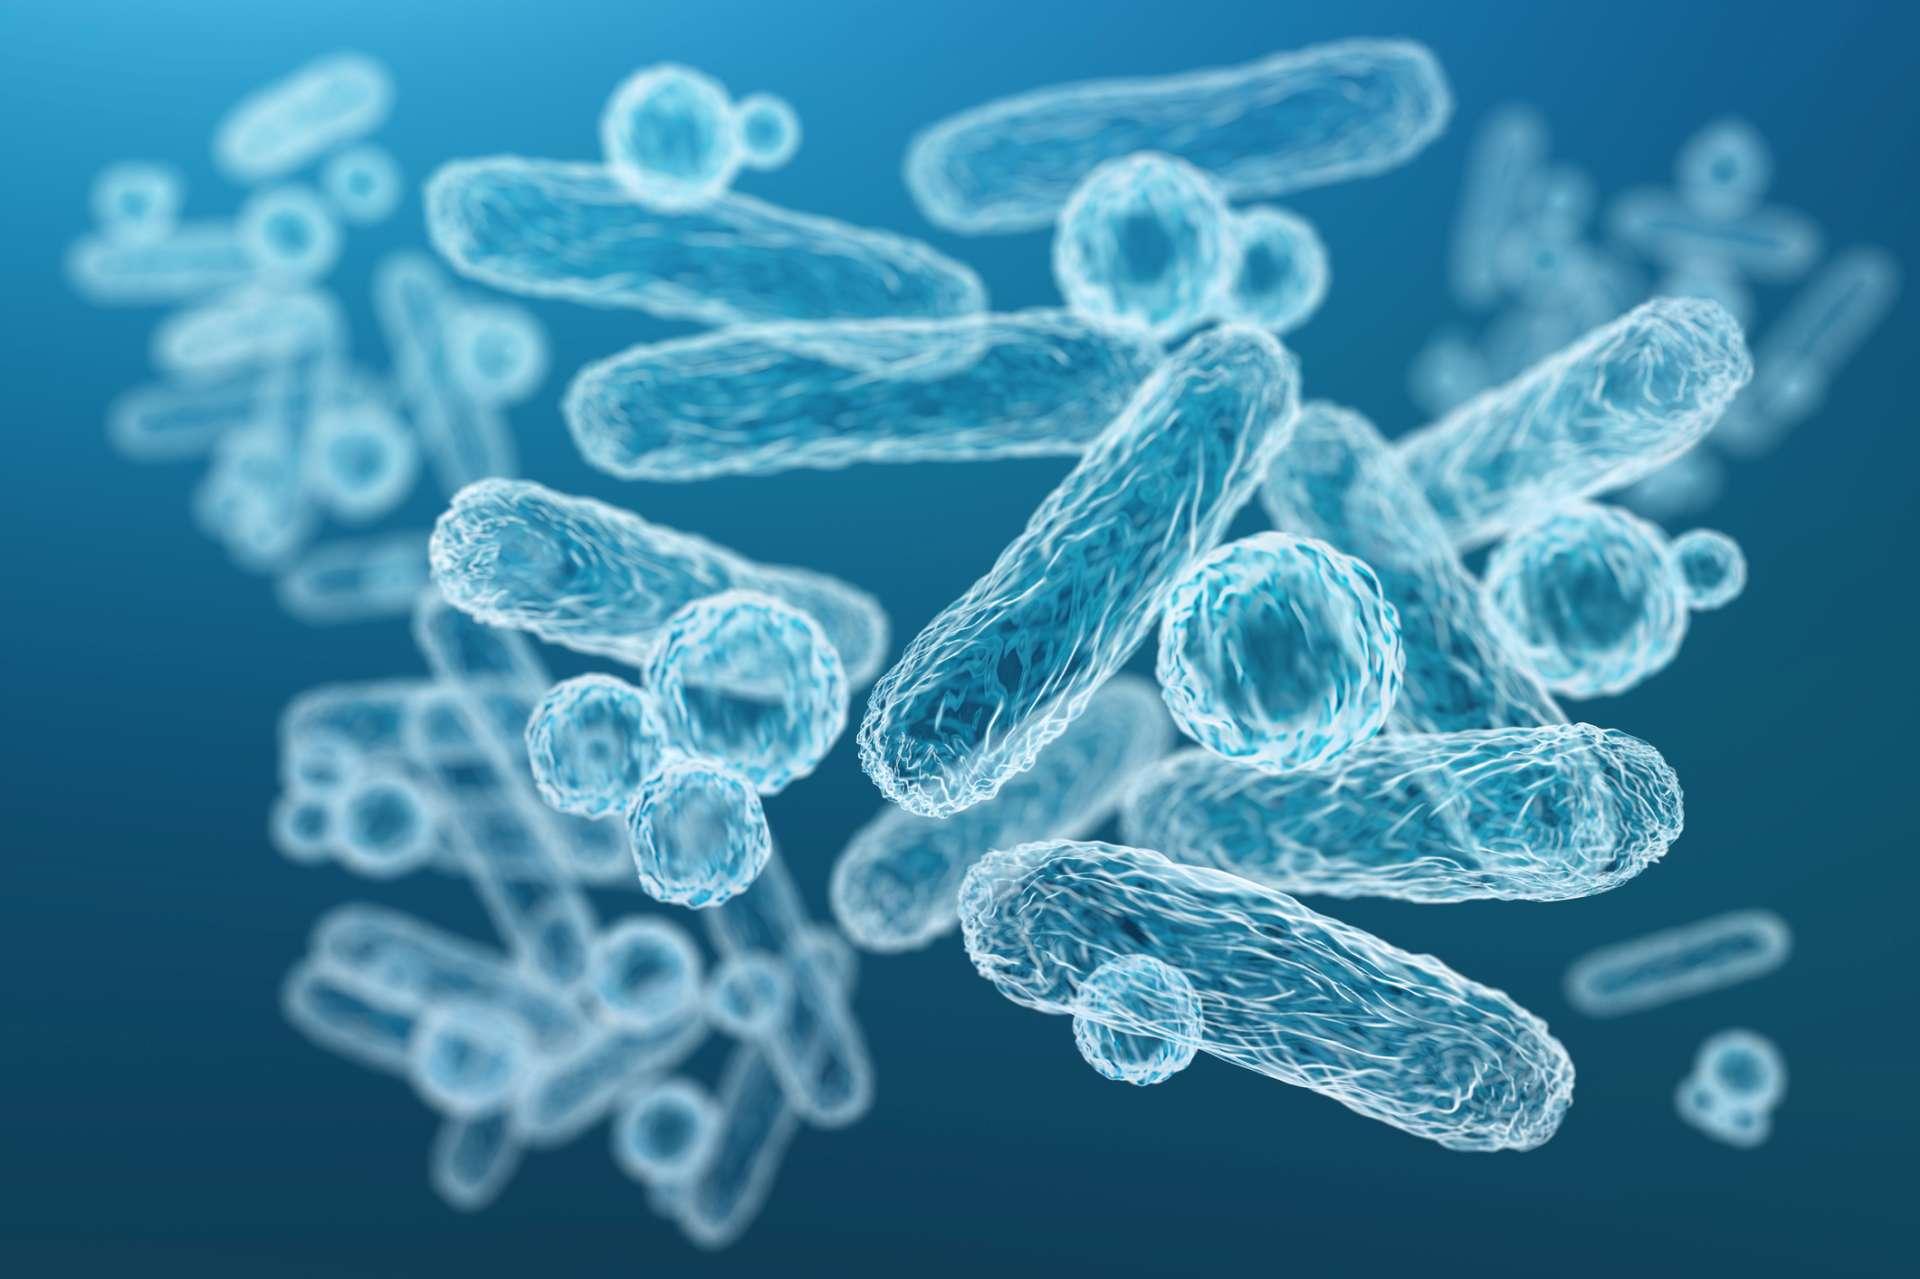 Nahaufnahme von 3D mikroskopisch kleinen blauen Bakterien